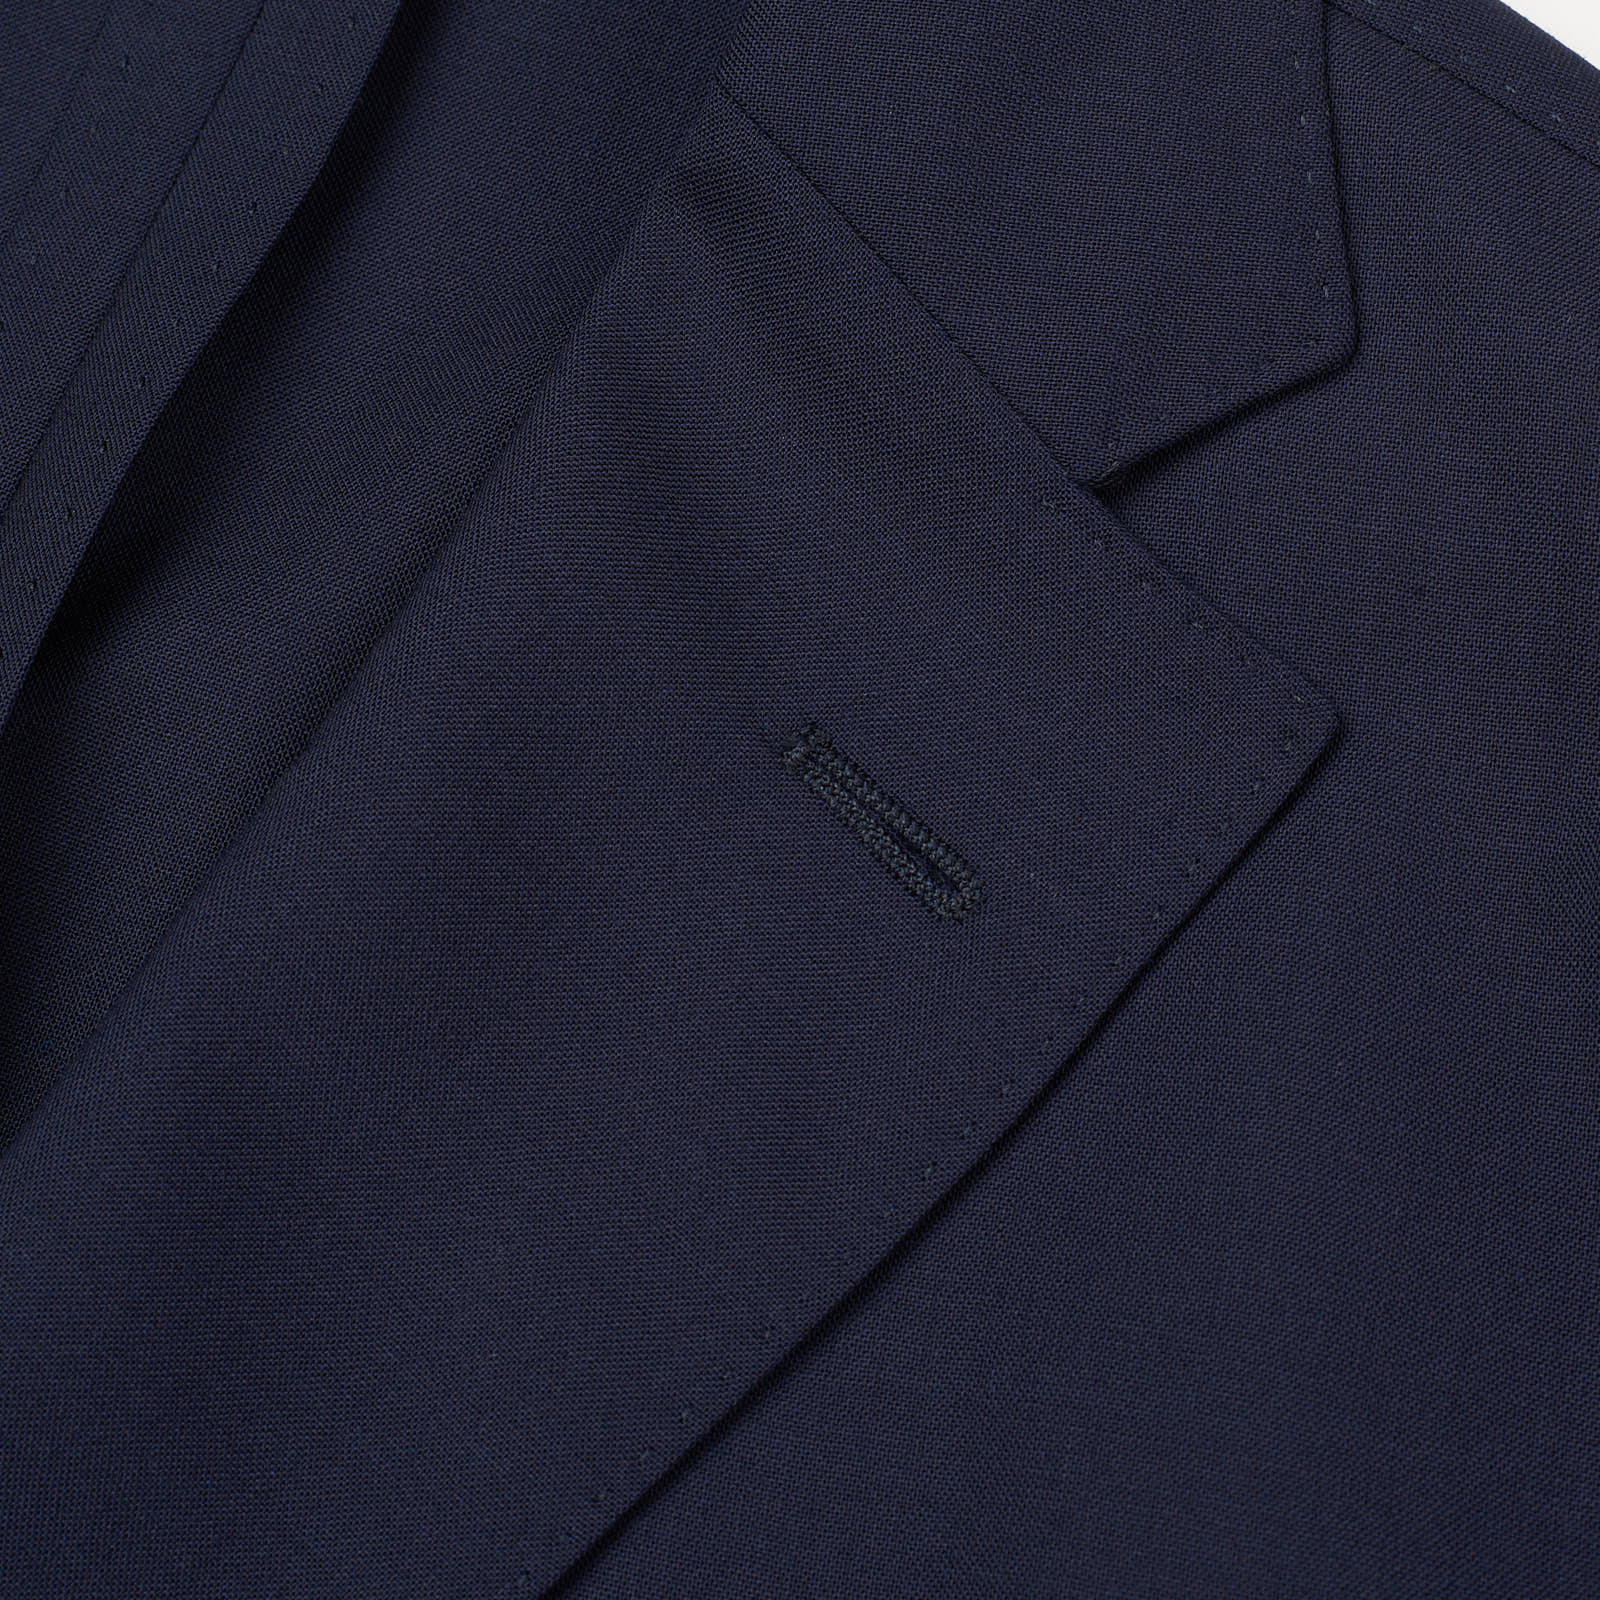 BOGLIOLI Milano "K. Jacket" Navy Blue Virgin Wool Unlined Suit EU 54 NEW US 44 Long Fit